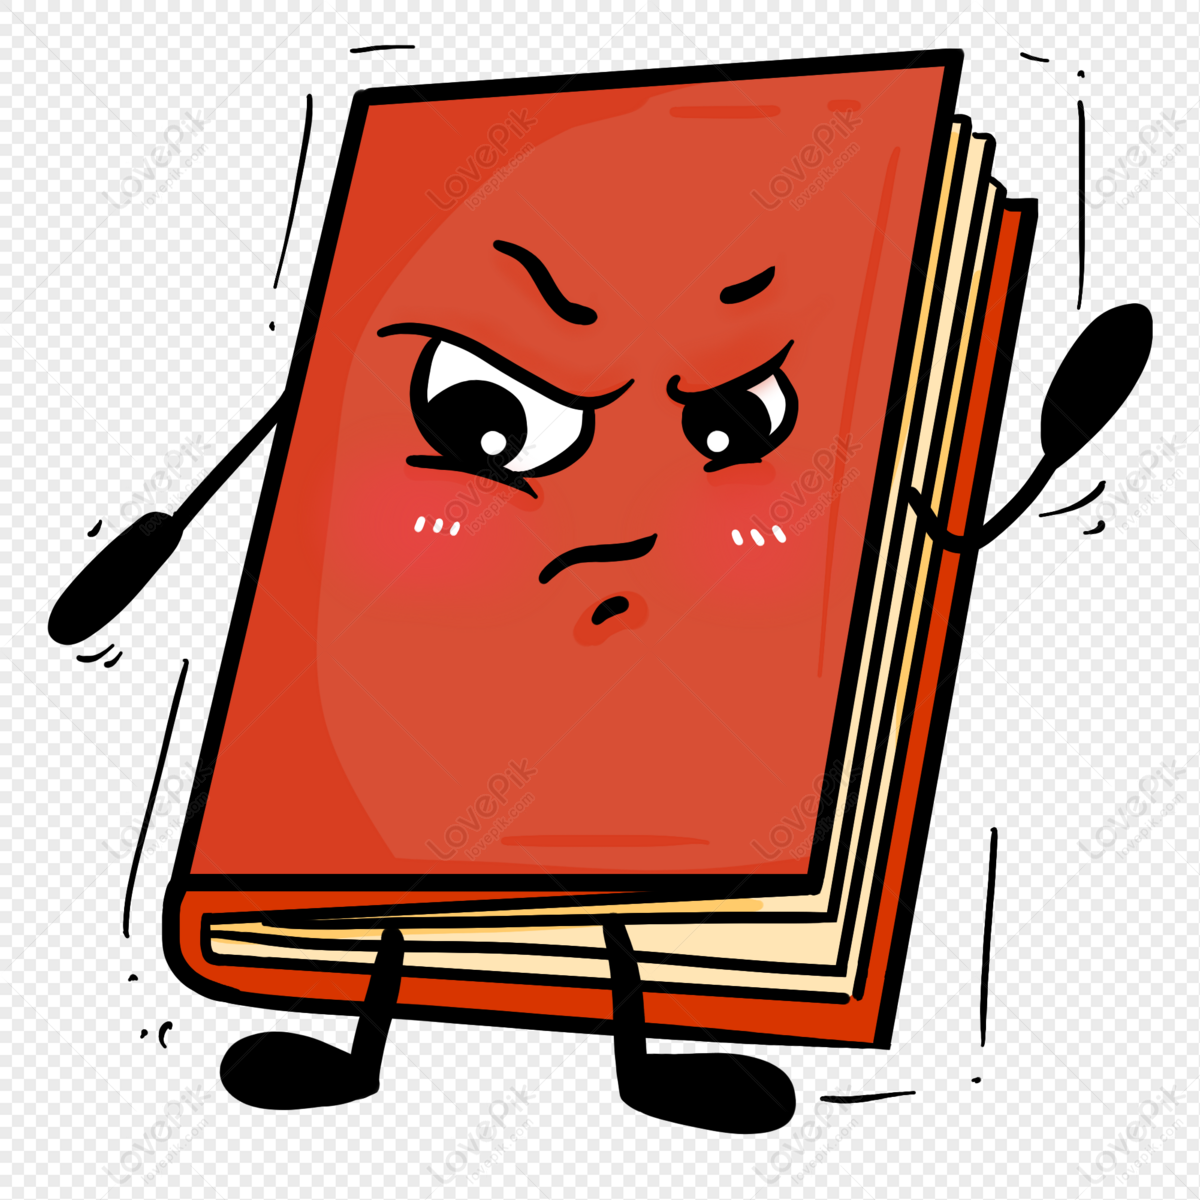 หนังสือปกแดง Png สำหรับการดาวน์โหลดฟรี - Lovepik